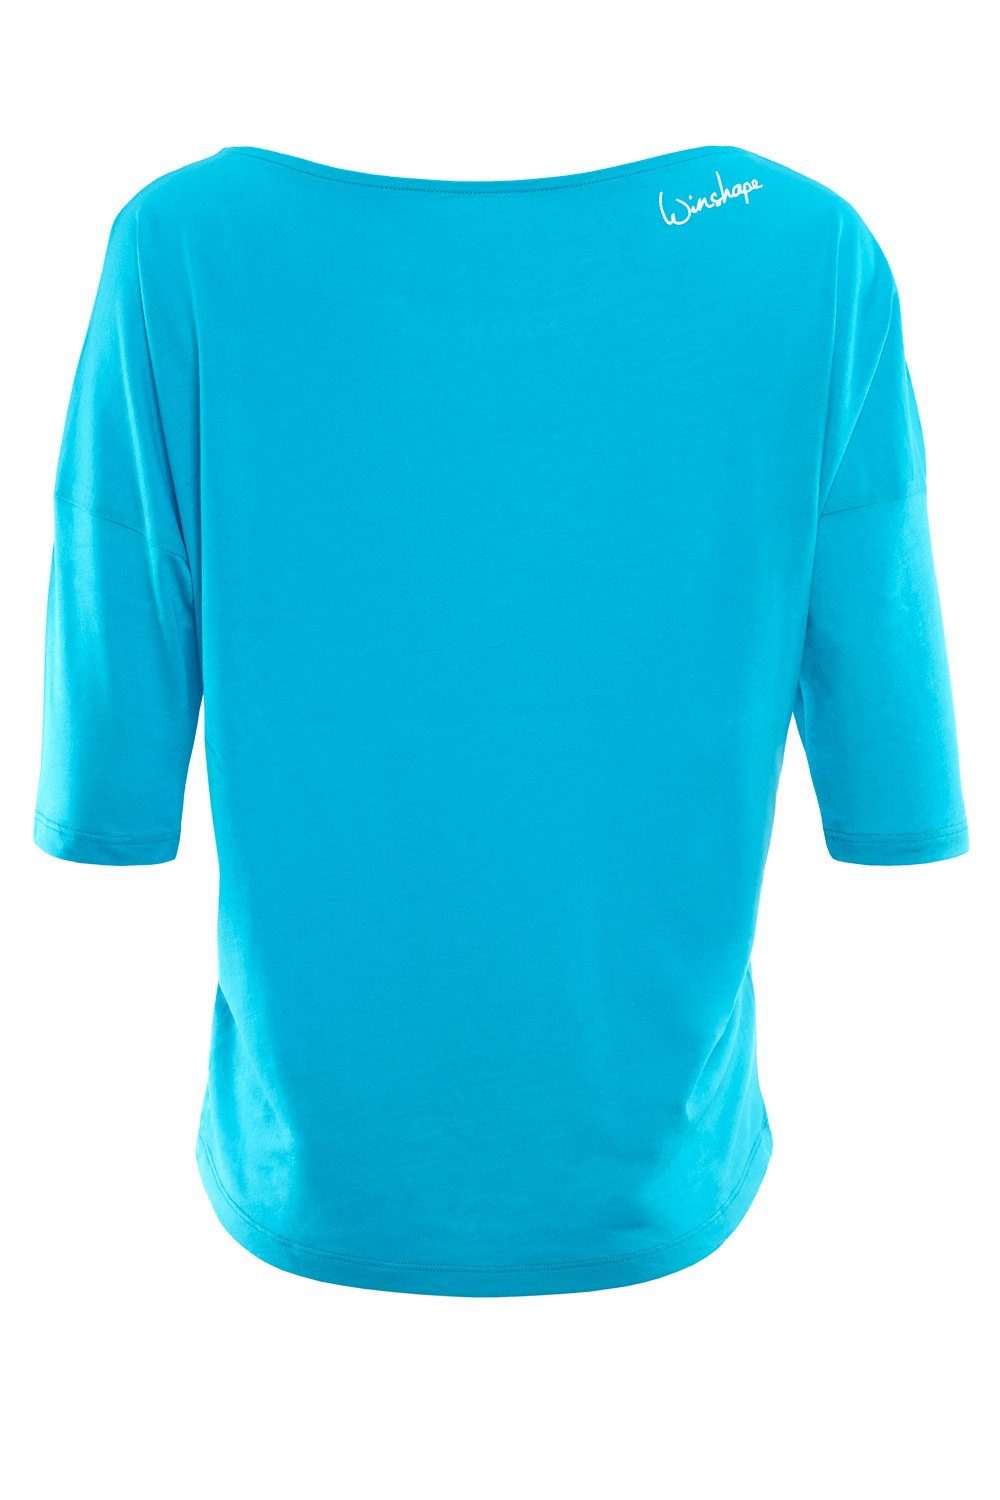 leicht mit weißem Winshape Glitzer-Aufdruck - blue sky MCS001 glitzer weiß 3/4-Arm-Shirt ultra